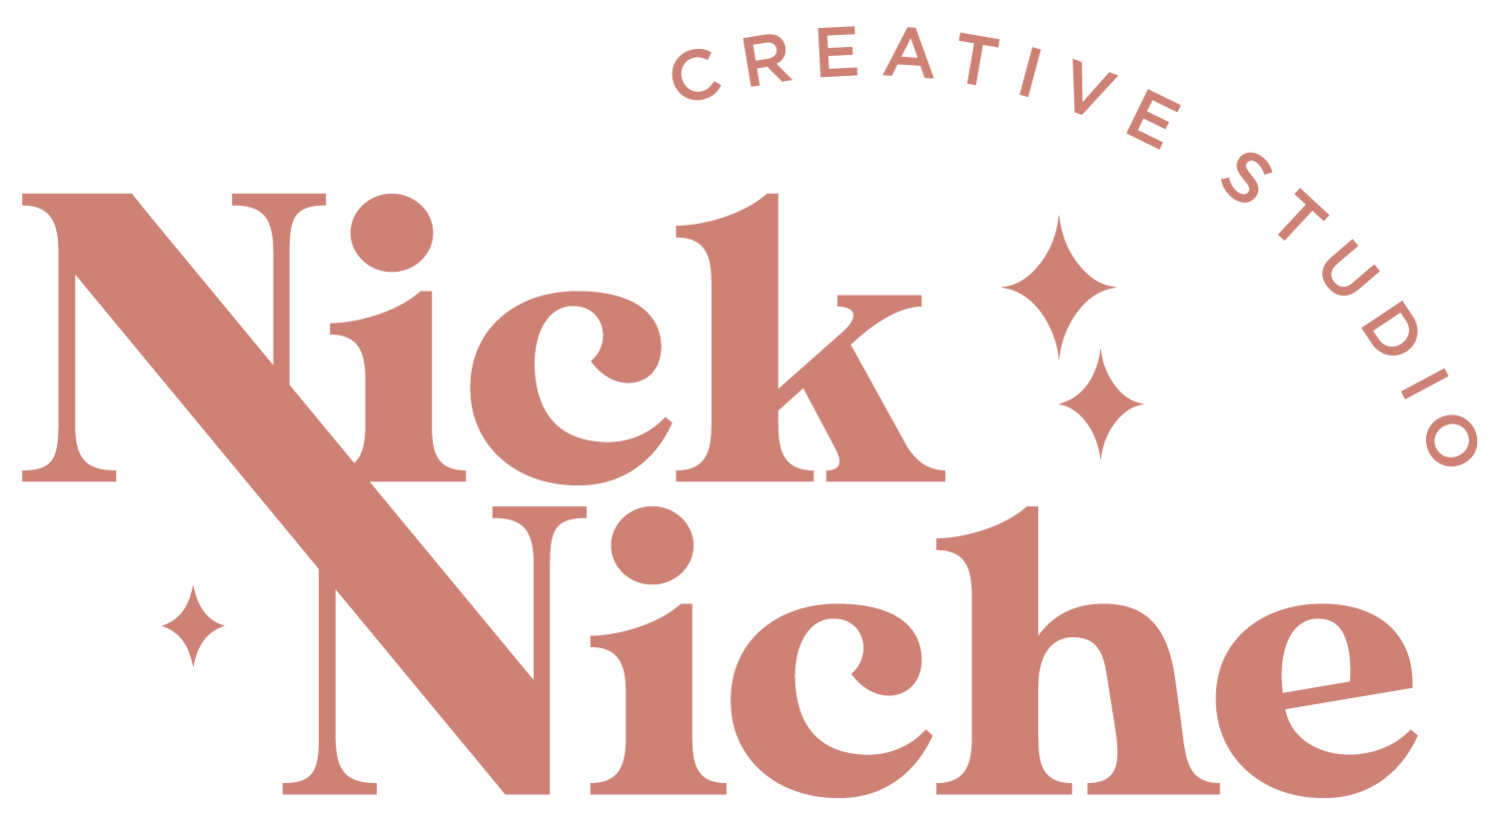 Nick Niche